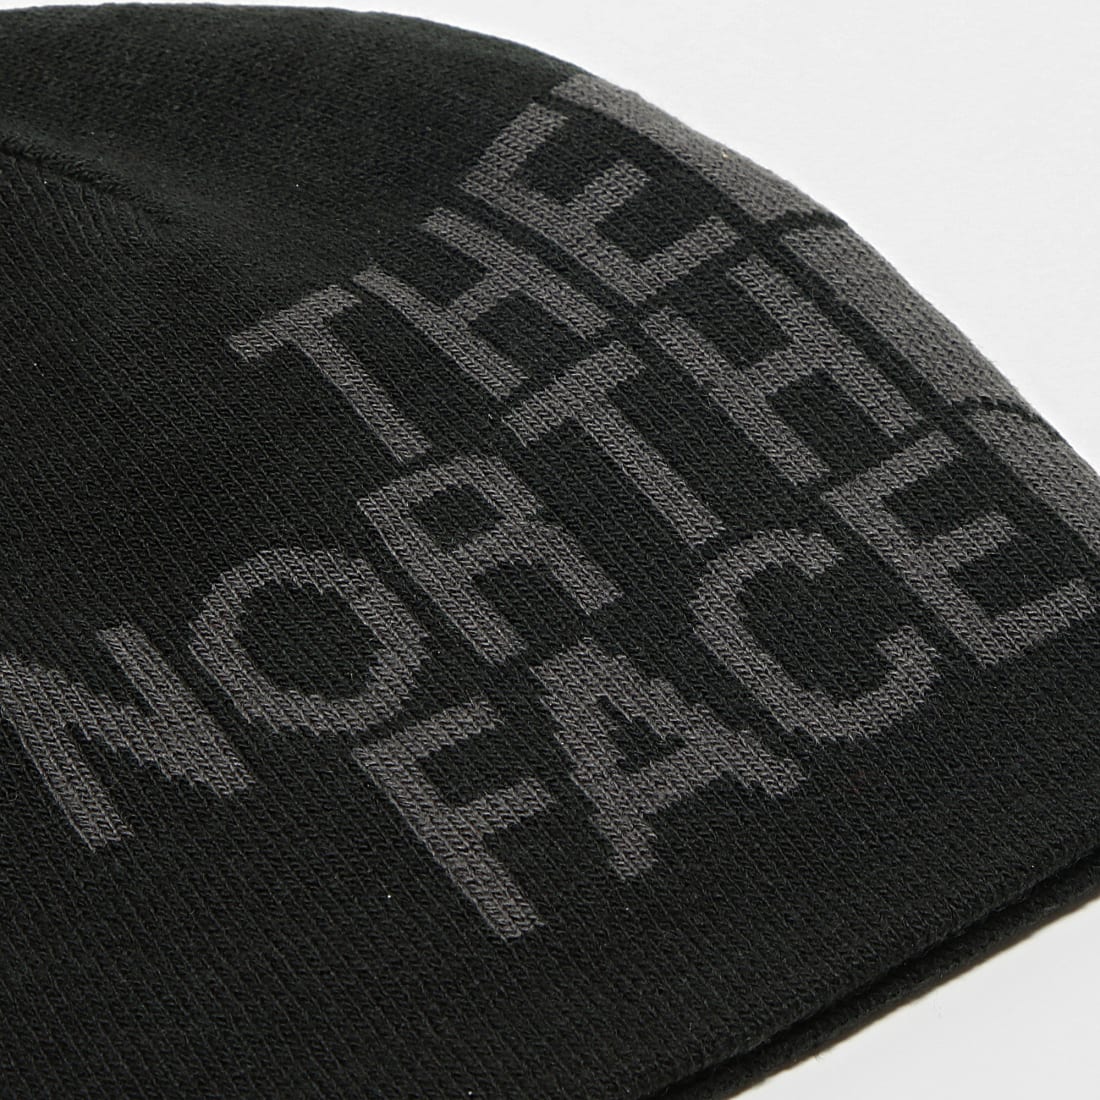 The North Face - Banner - Bonnet réversible - Gris foncé et noir